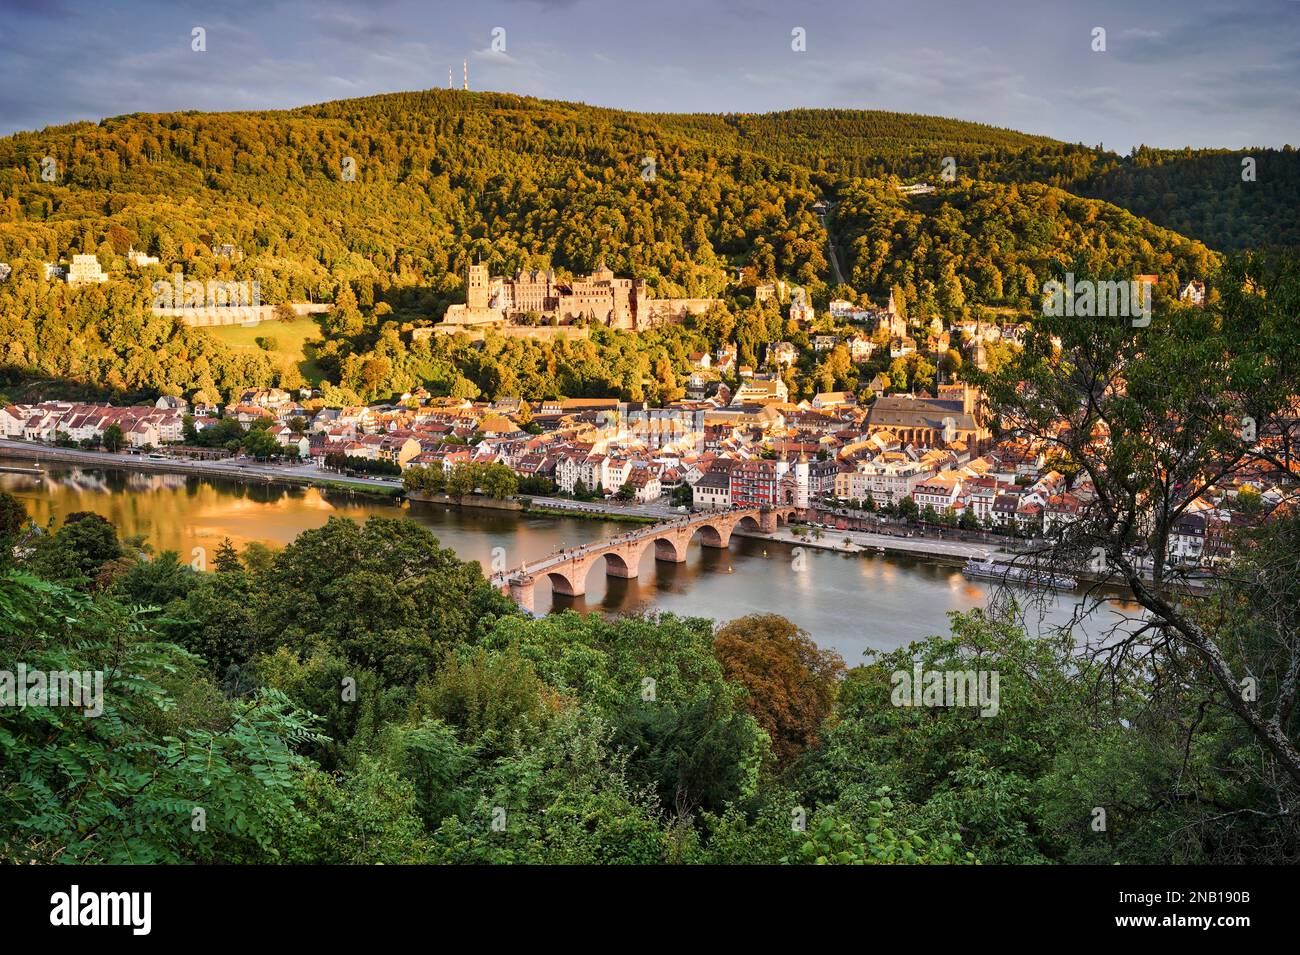 Die Altstadt von Heidelberg mit dem Schloss, der Alten Brücke, dem Fluss Neckar und dem Brückentor. Das Bild stammt aus der Öffentlichkeit. Goldene Stunde. Deutschland. Stockfoto